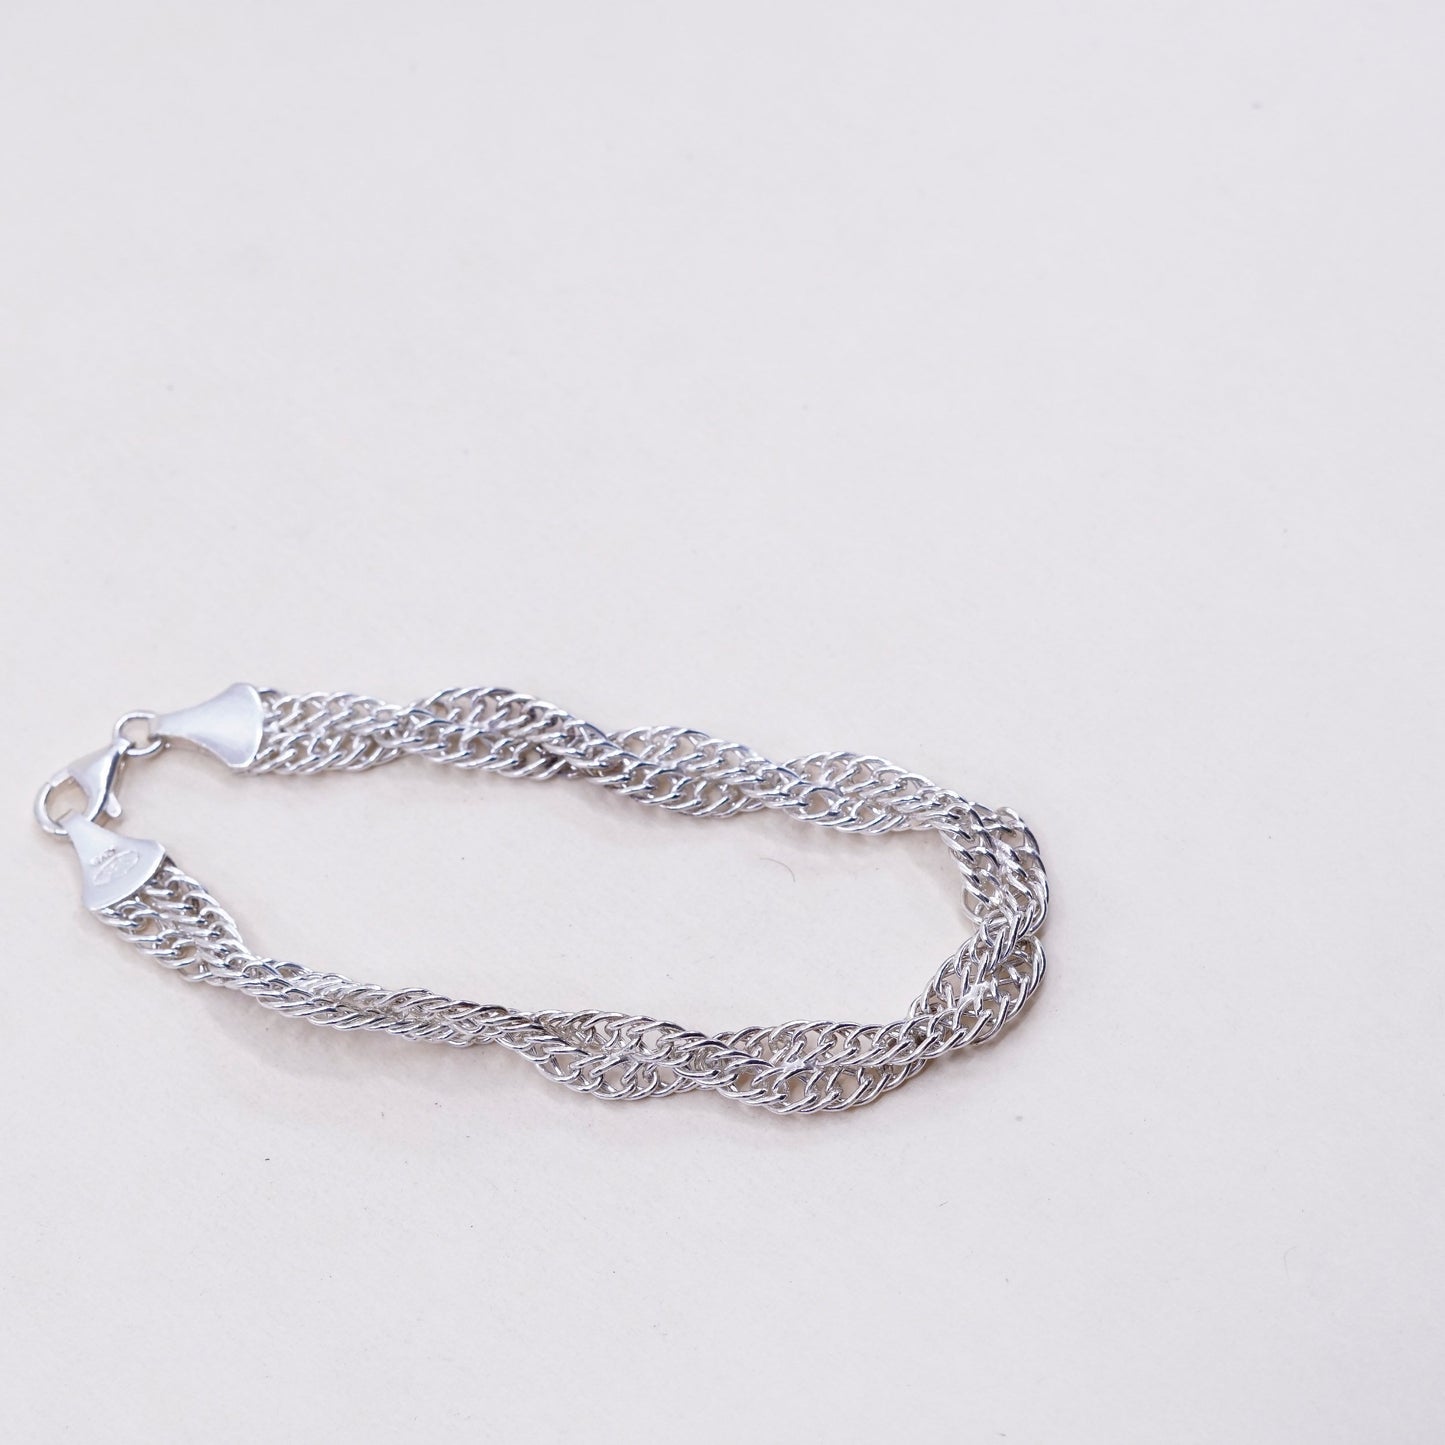 7”, 10mm, Vintage sterling silver bracelet, twisted curb link bracelet